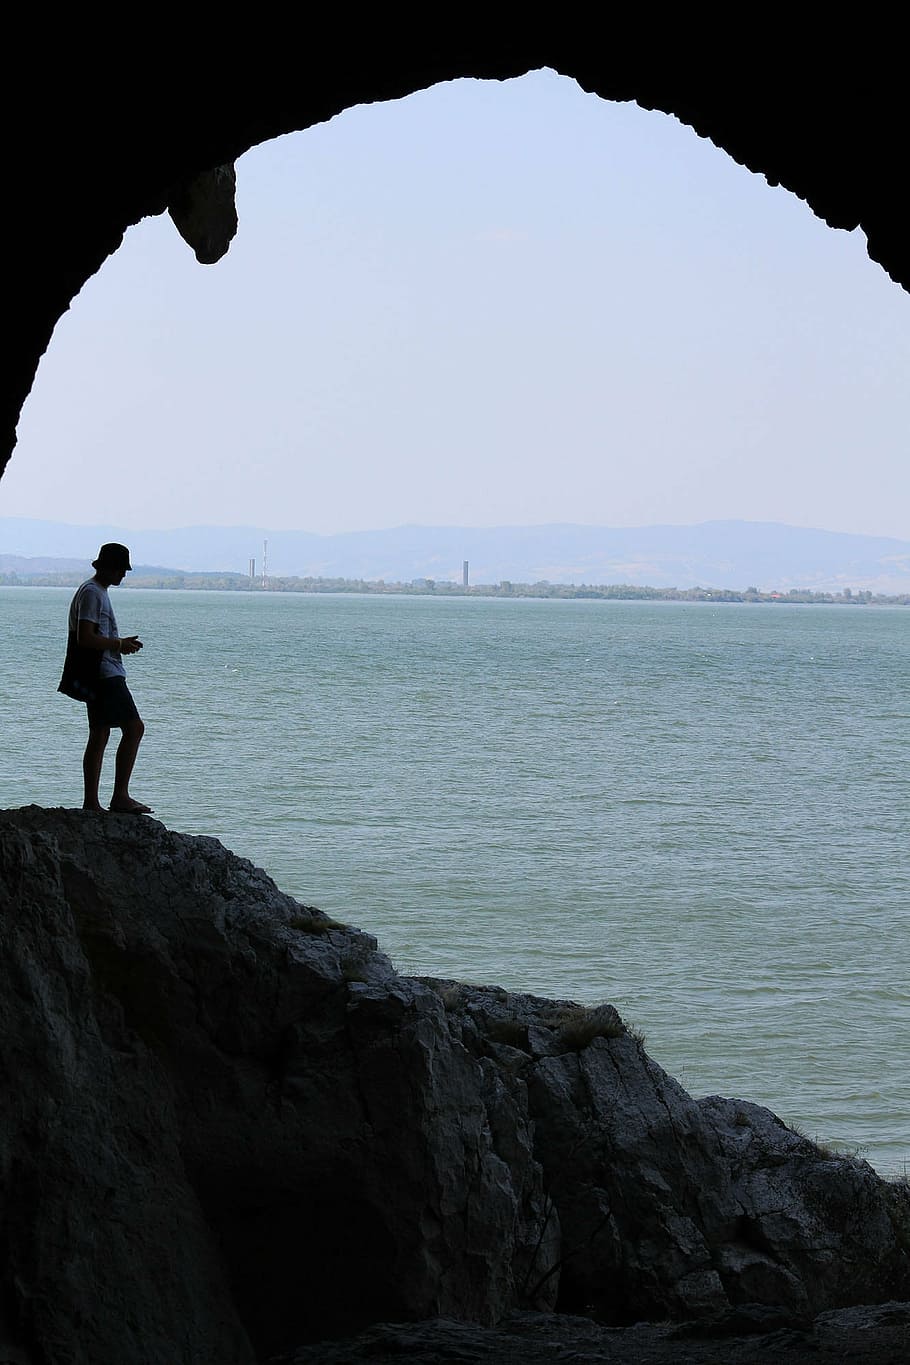 cueva, fotógrafo, lago, hombre, persona, silueta, horizonte, personas reales, mar, una persona